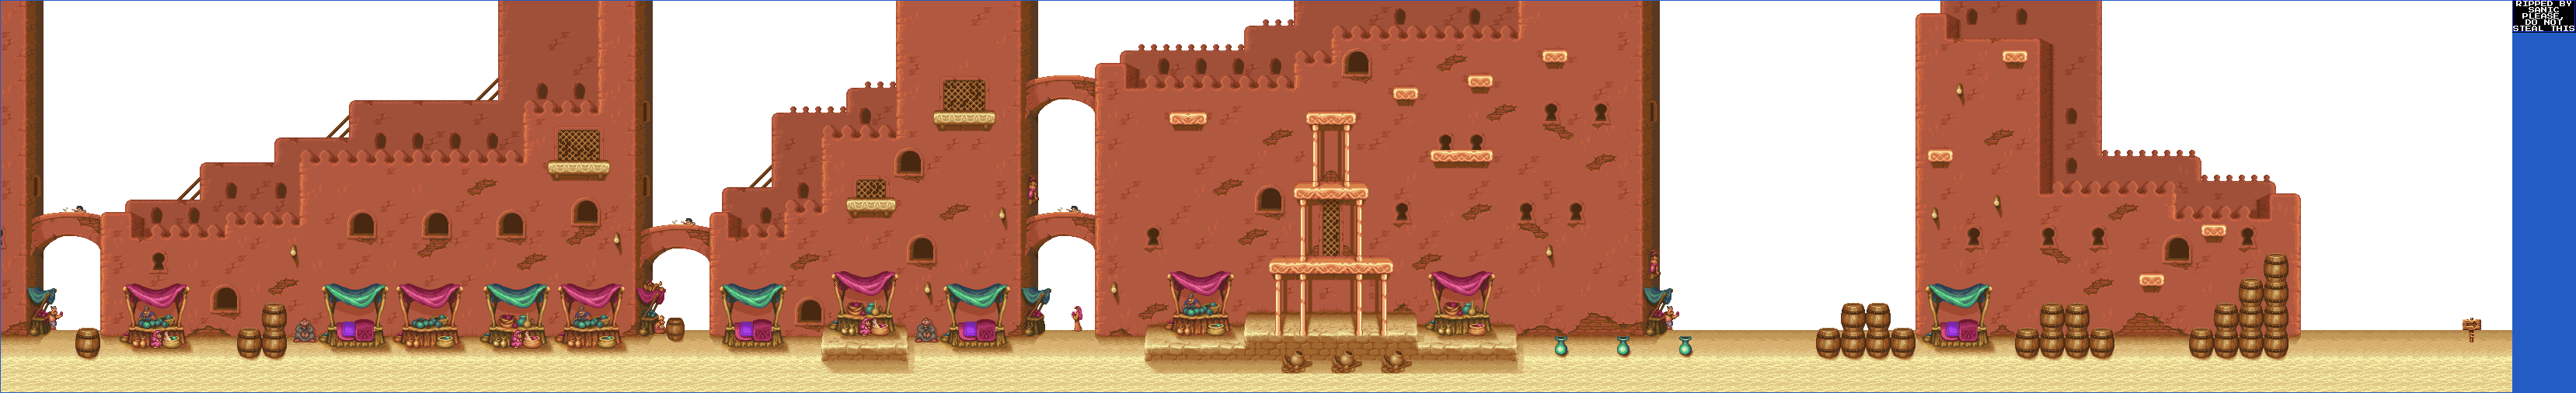 Aladdin - Stage 1